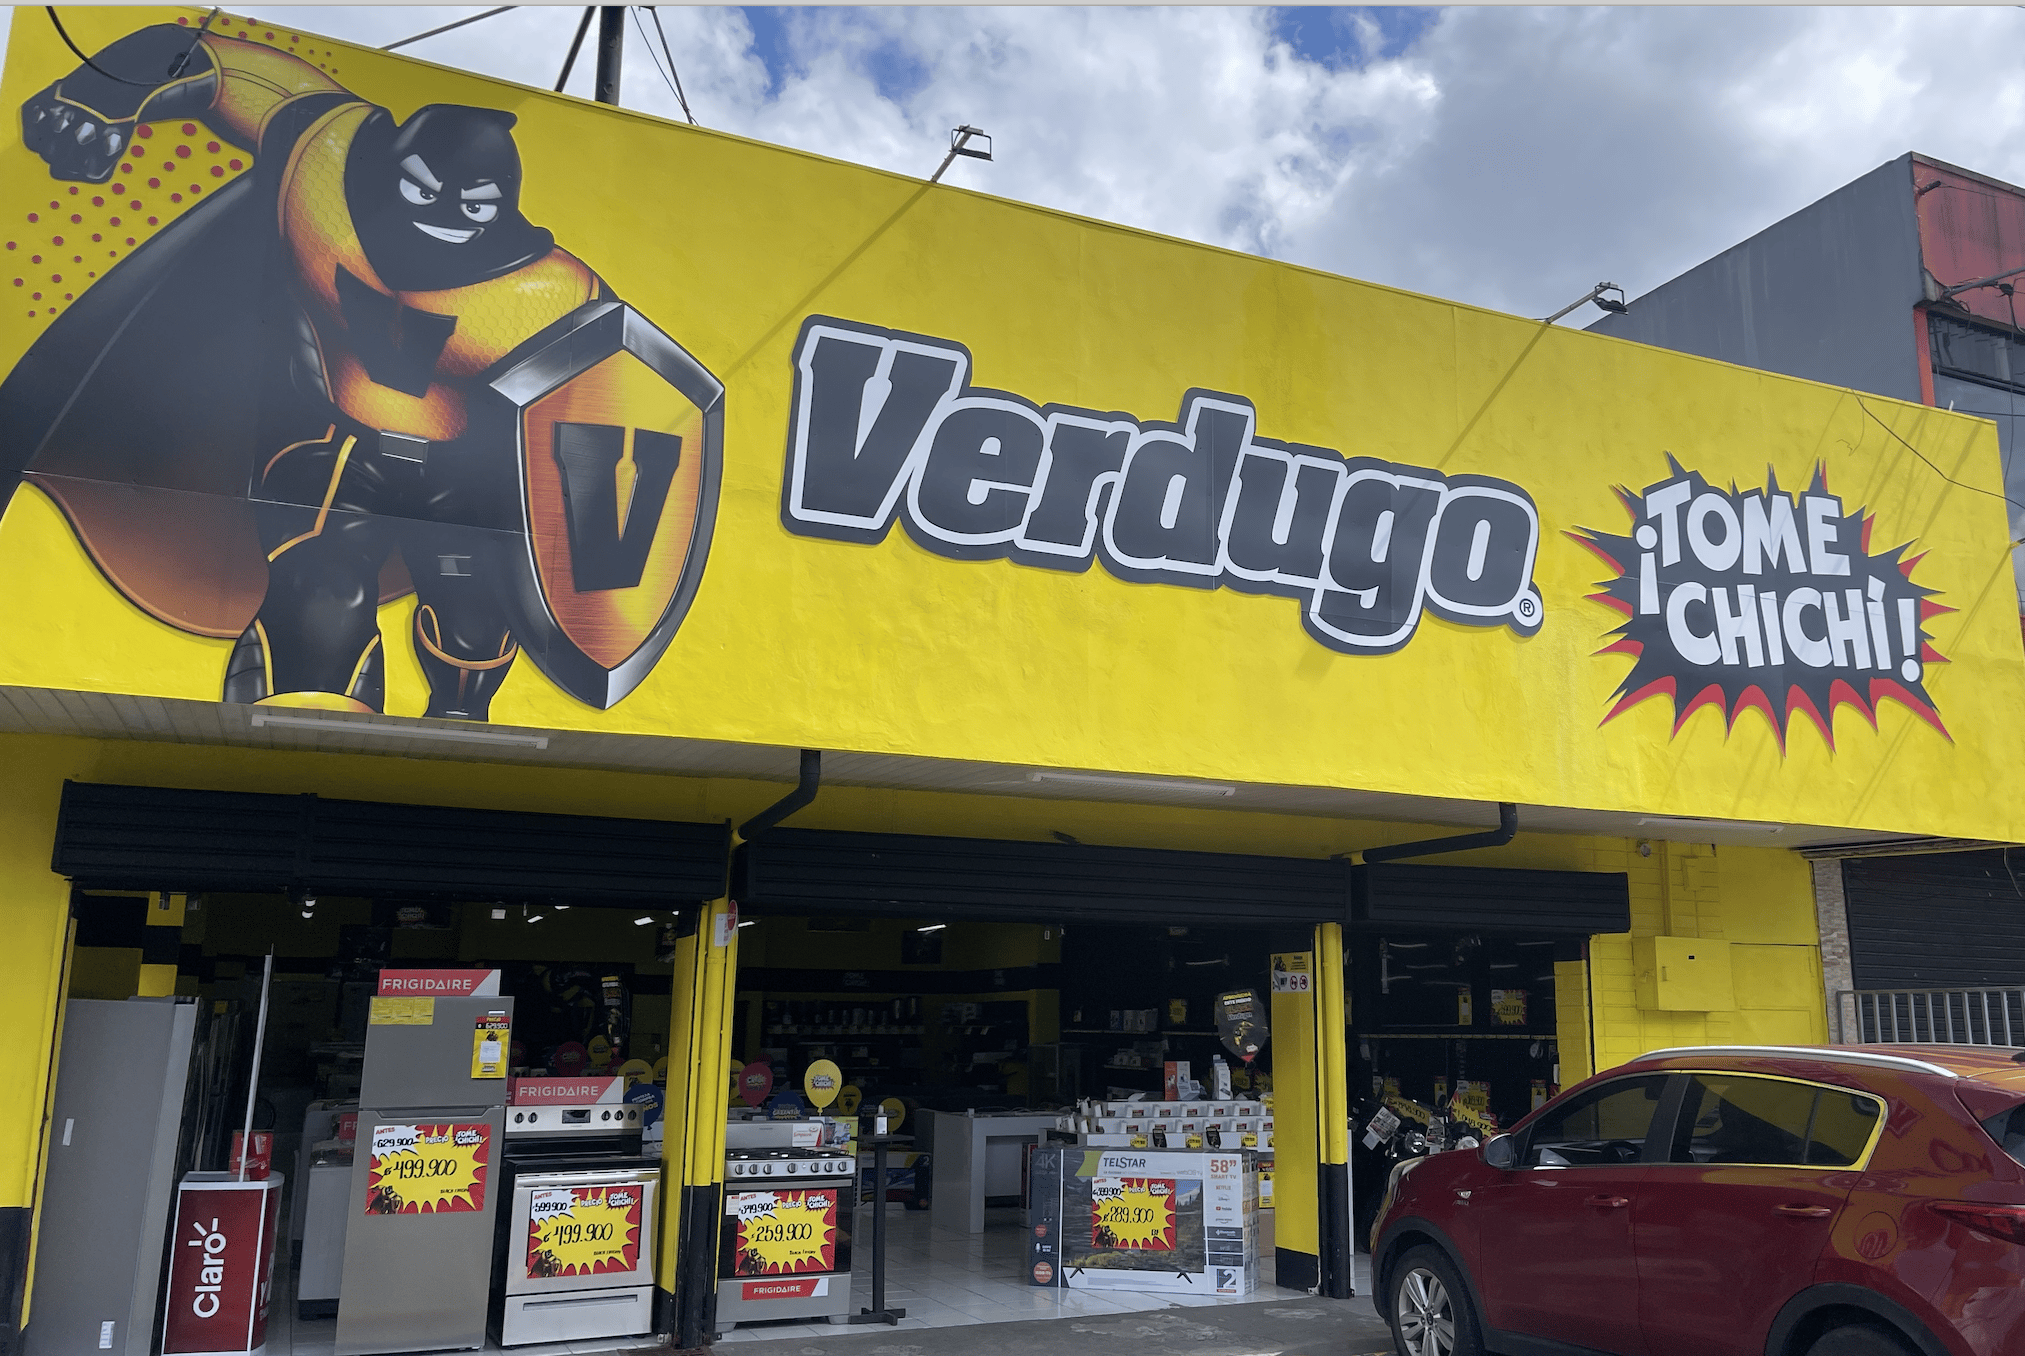 Cadena de tiendas Verdugo anuncia la apertura de 10 tiendas en 2023